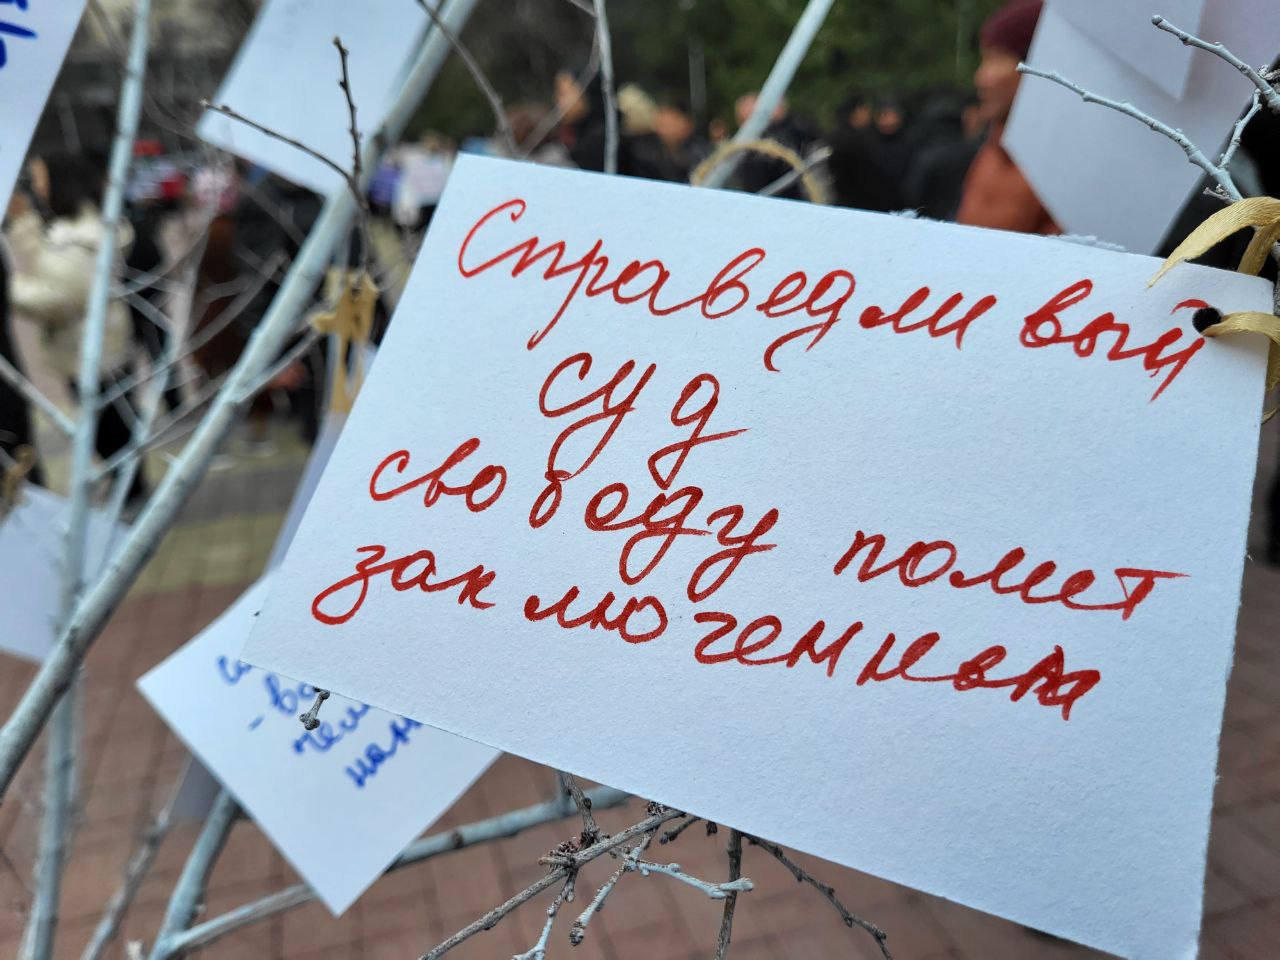 В Бишкеке прошёл митинг за свободу политузников Кемпир-Абадского дела. Как это было?